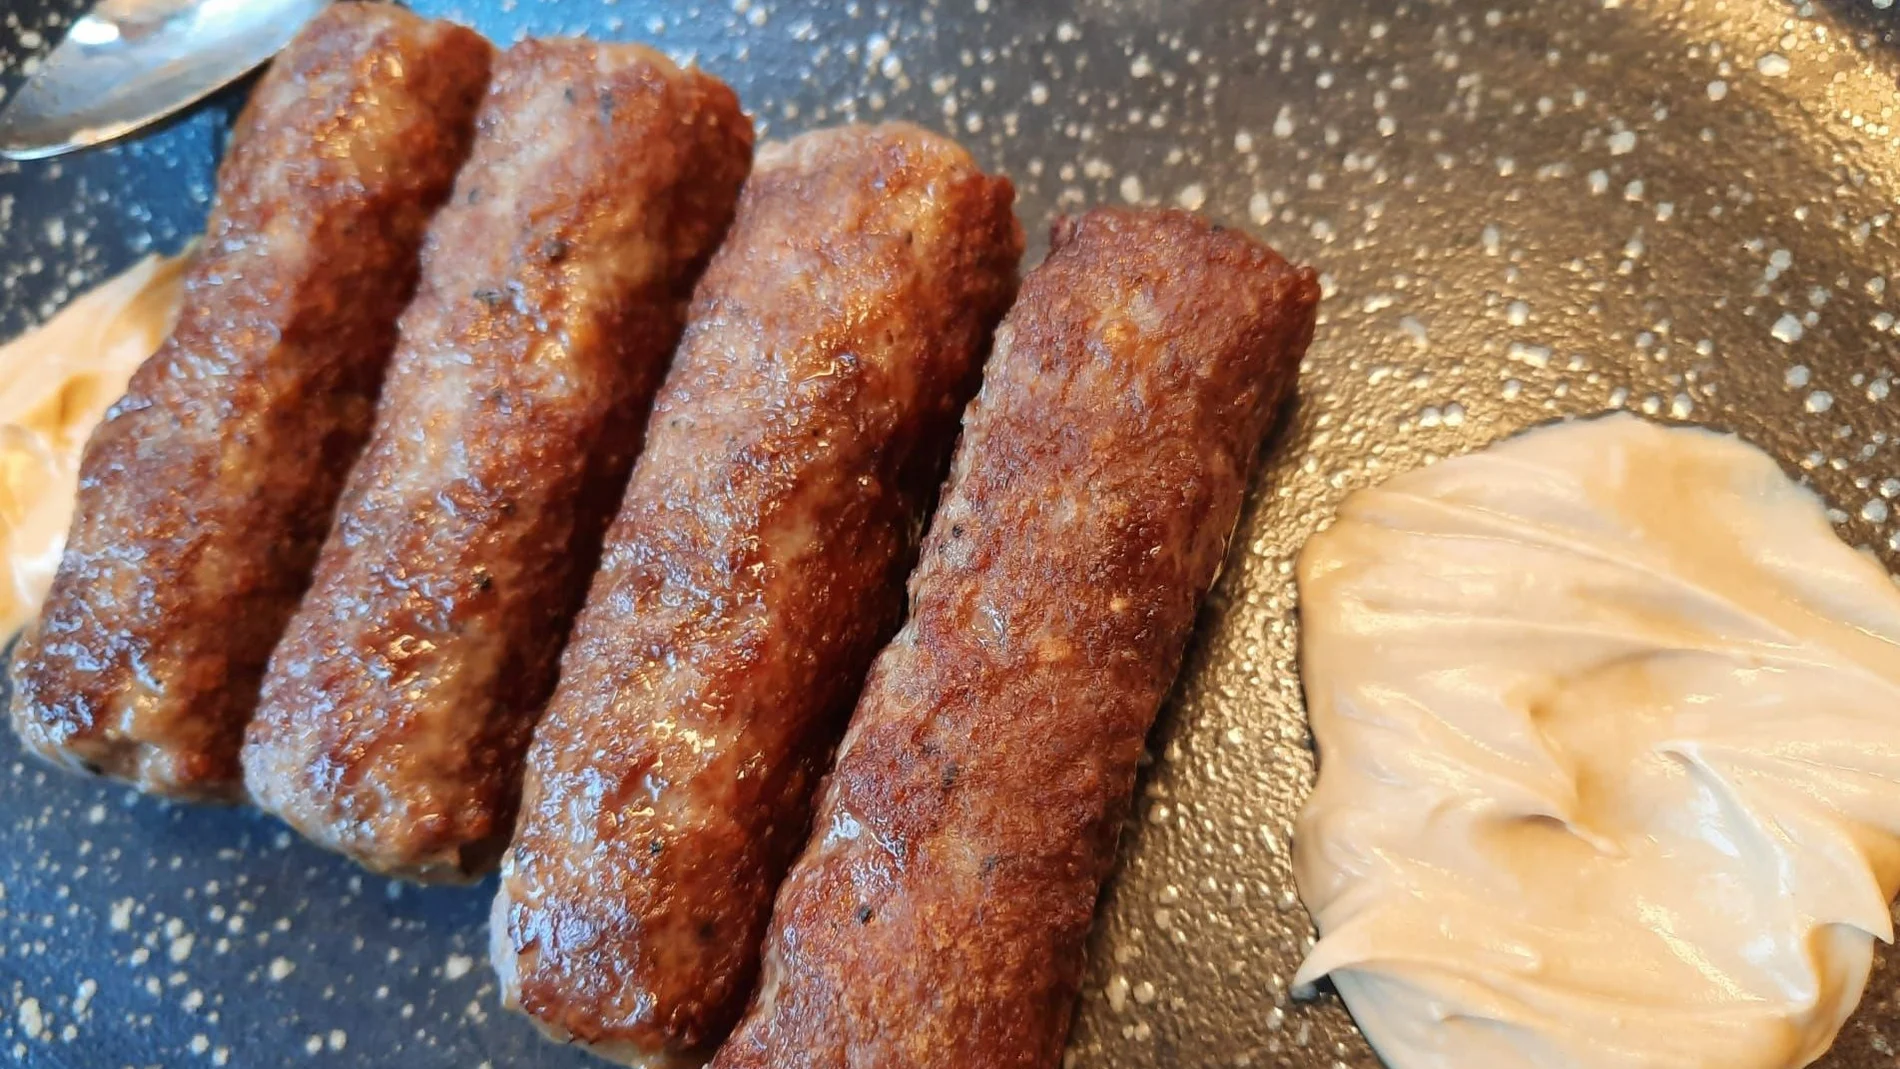 El “mici rumano” una peculiar salchicha fresca de carne picada condimentada por especias